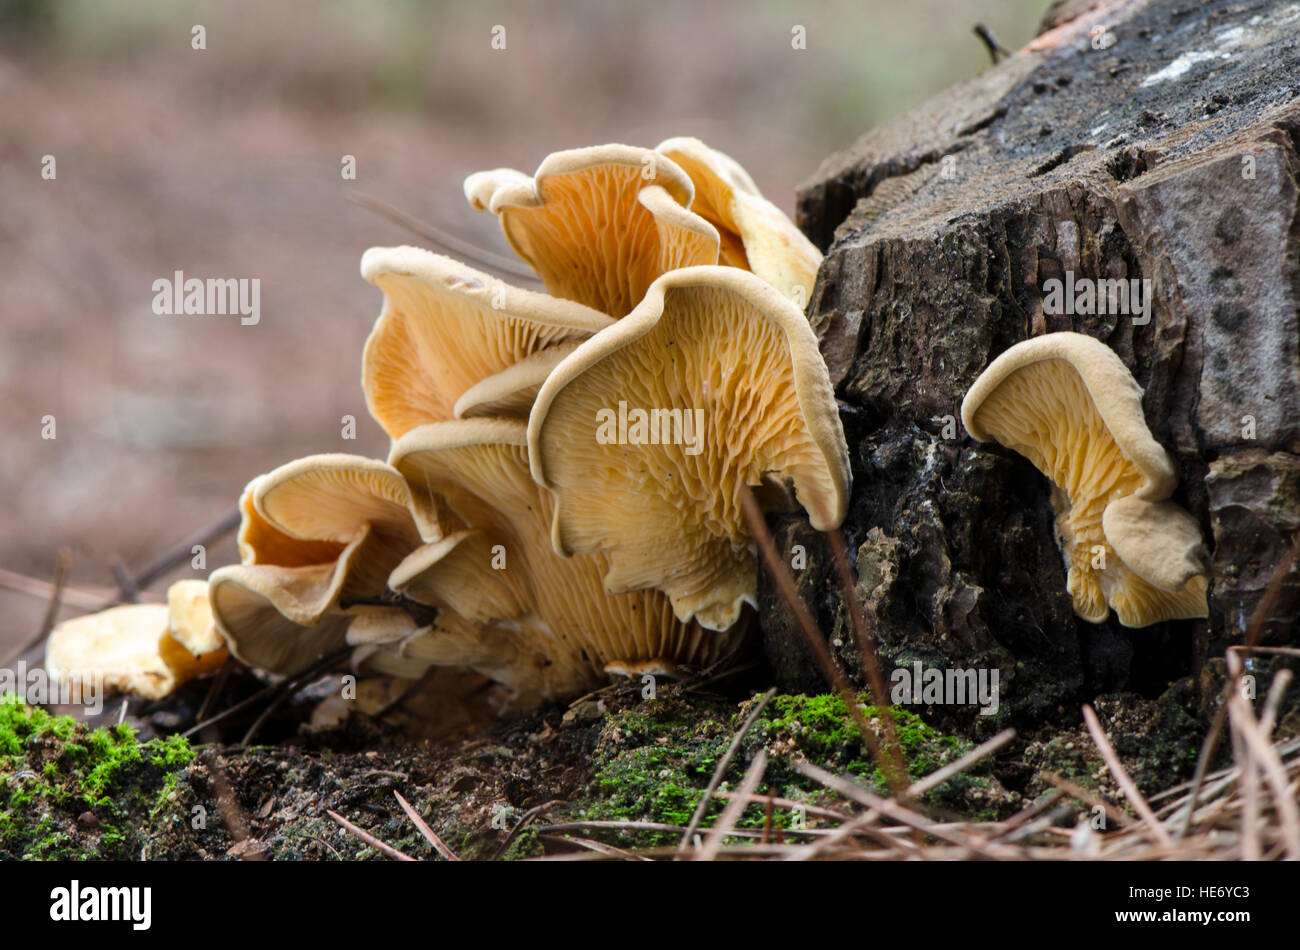 Pleurotus sp on tree, gilled mushroom, mushrooms, at foot of tree, Spain. Stock Photo